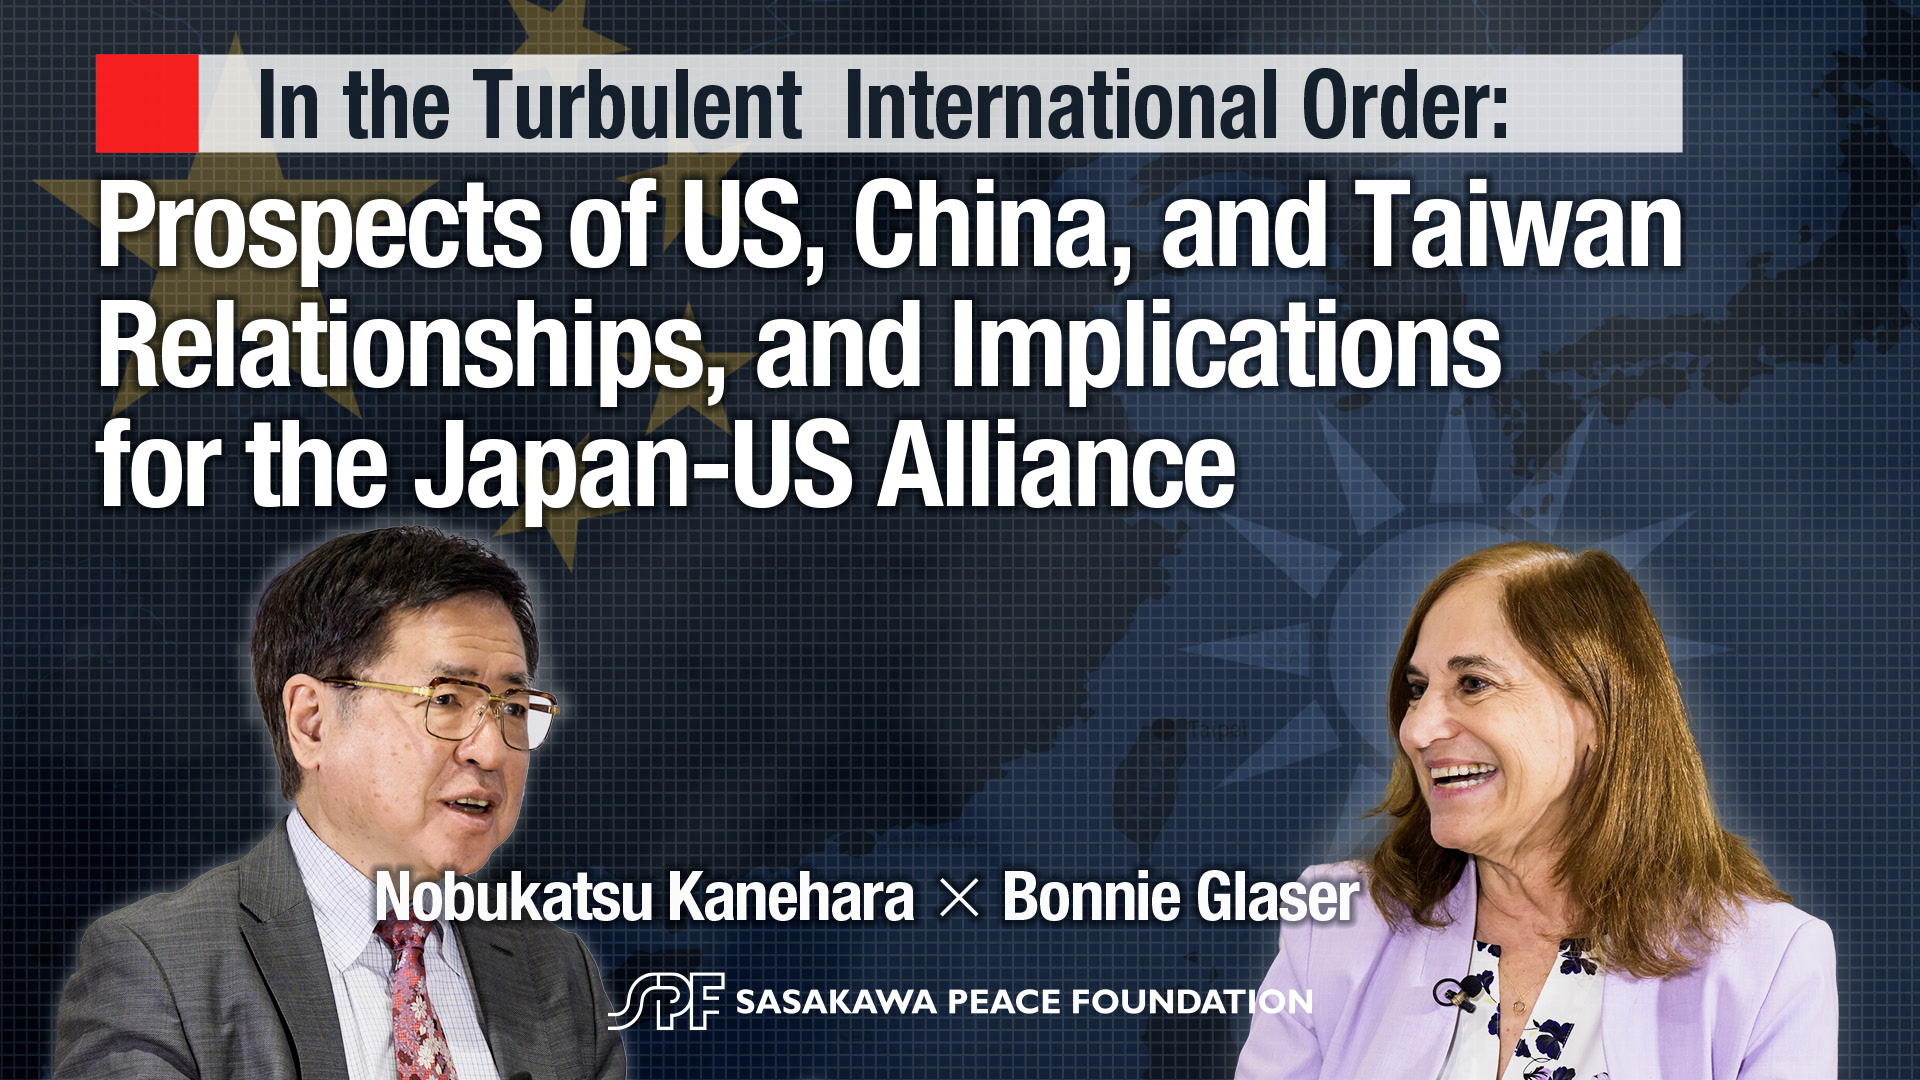 【対談動画】（オリジナルー英語）In the Turbulent International Order: US, China, Taiwan Relations/Implications for Japan-US Alliance